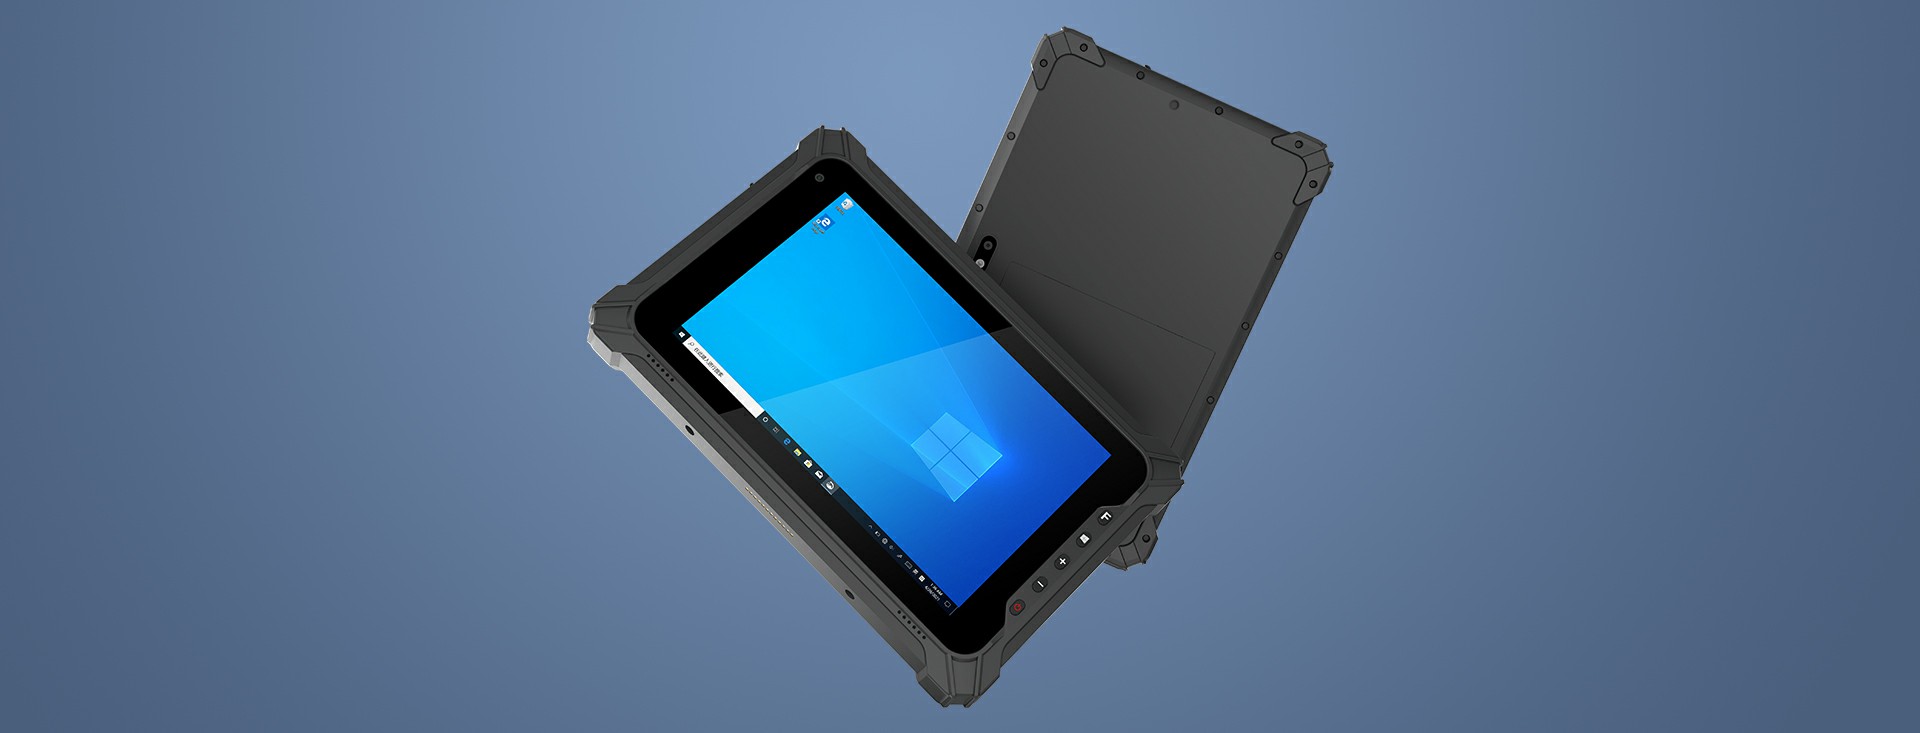 EM-I17J industrial rugged tablet